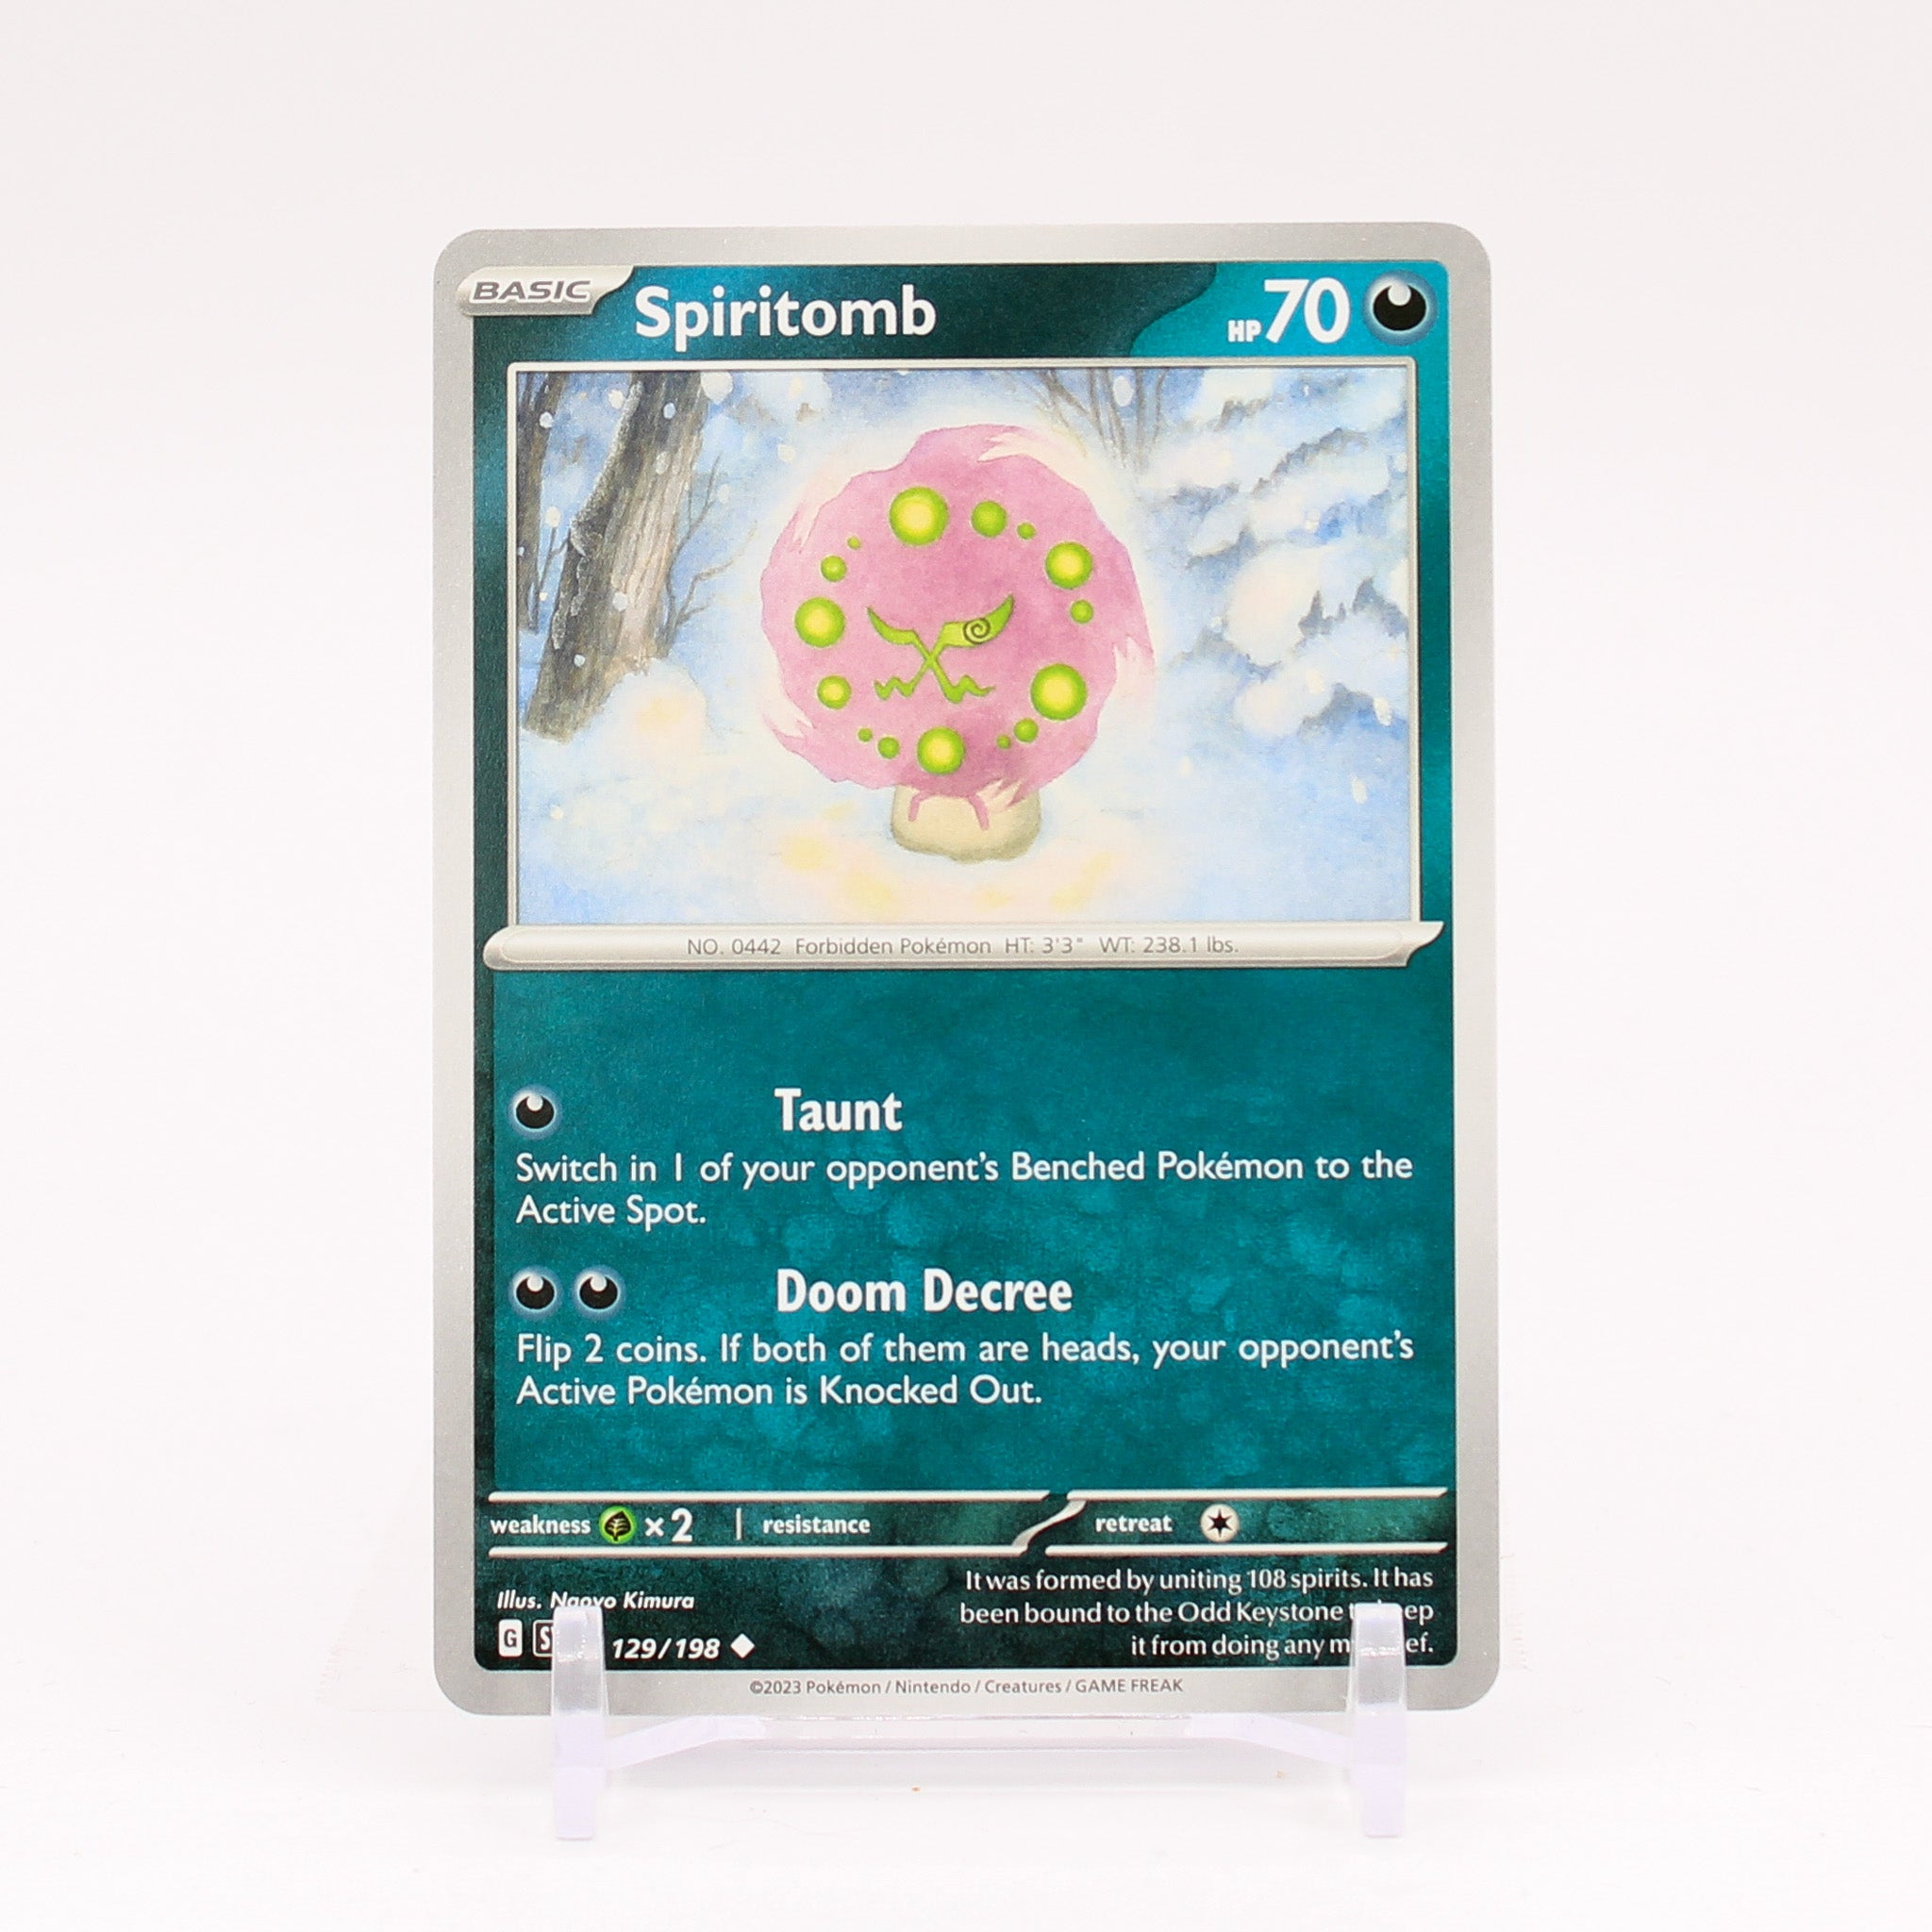 Spiritomb - SV02: Paldea Evolved - Pokemon